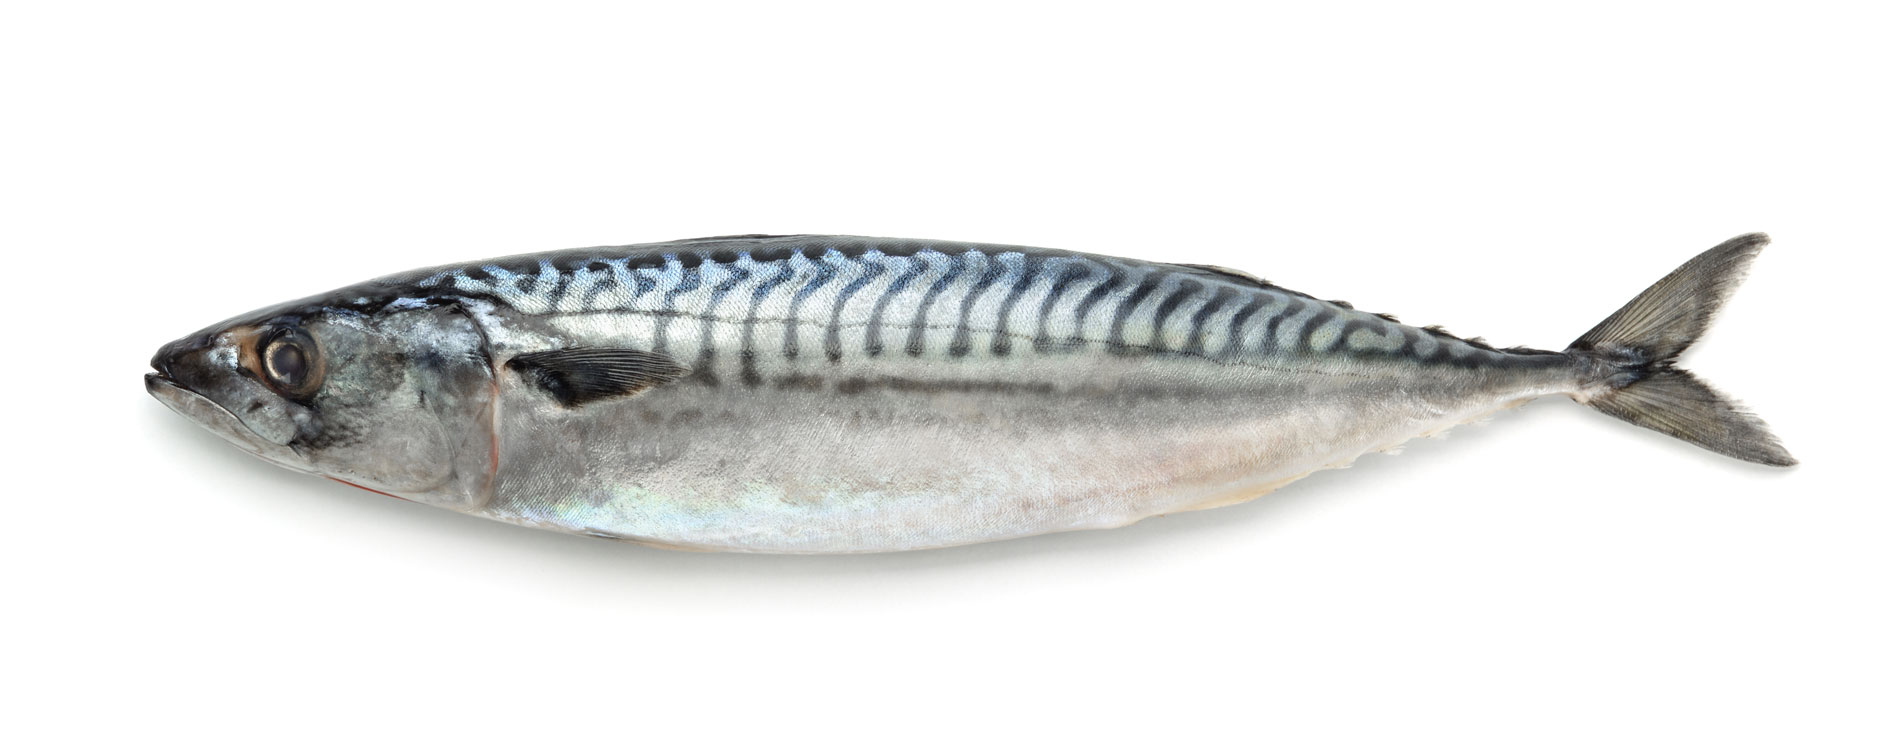 У скумбрии например прямое и гладкое. Скумбрия атлантическая макрель. Mackerel Fish скумбрия. Скумбрия 300-500 Эквадор. Скумбрия 200 400 н/р см вес.